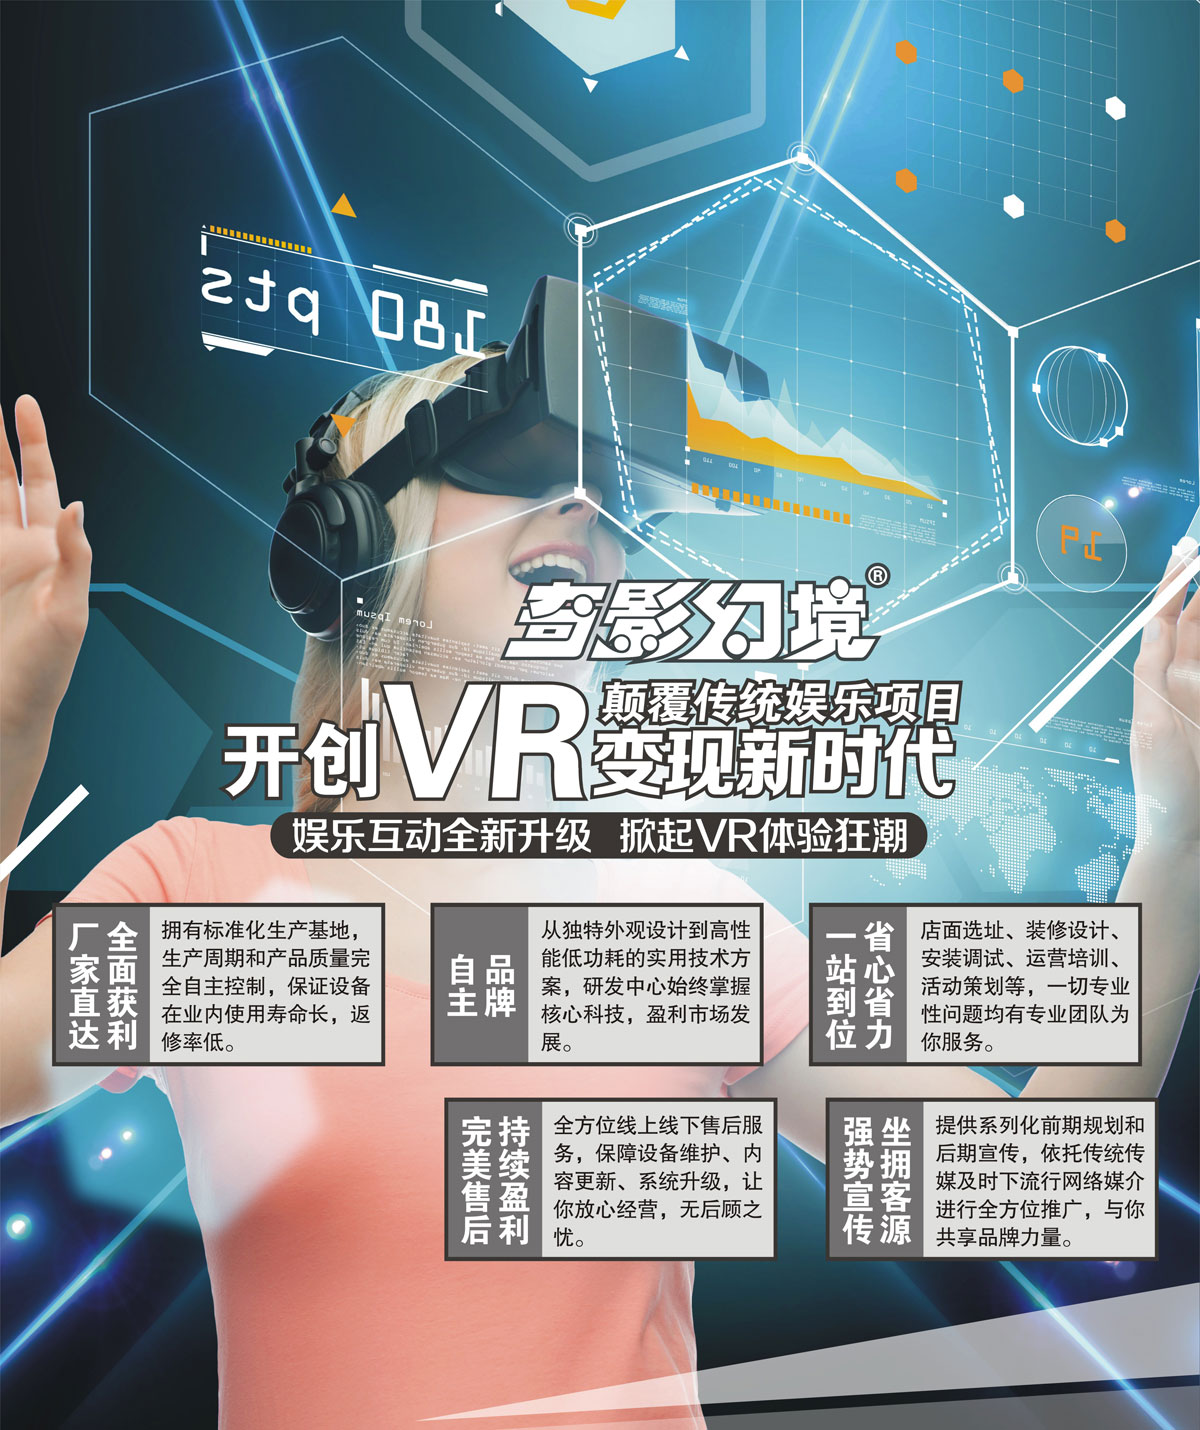 社区安全开创VR变现新时代颠覆传统娱乐项目.jpg